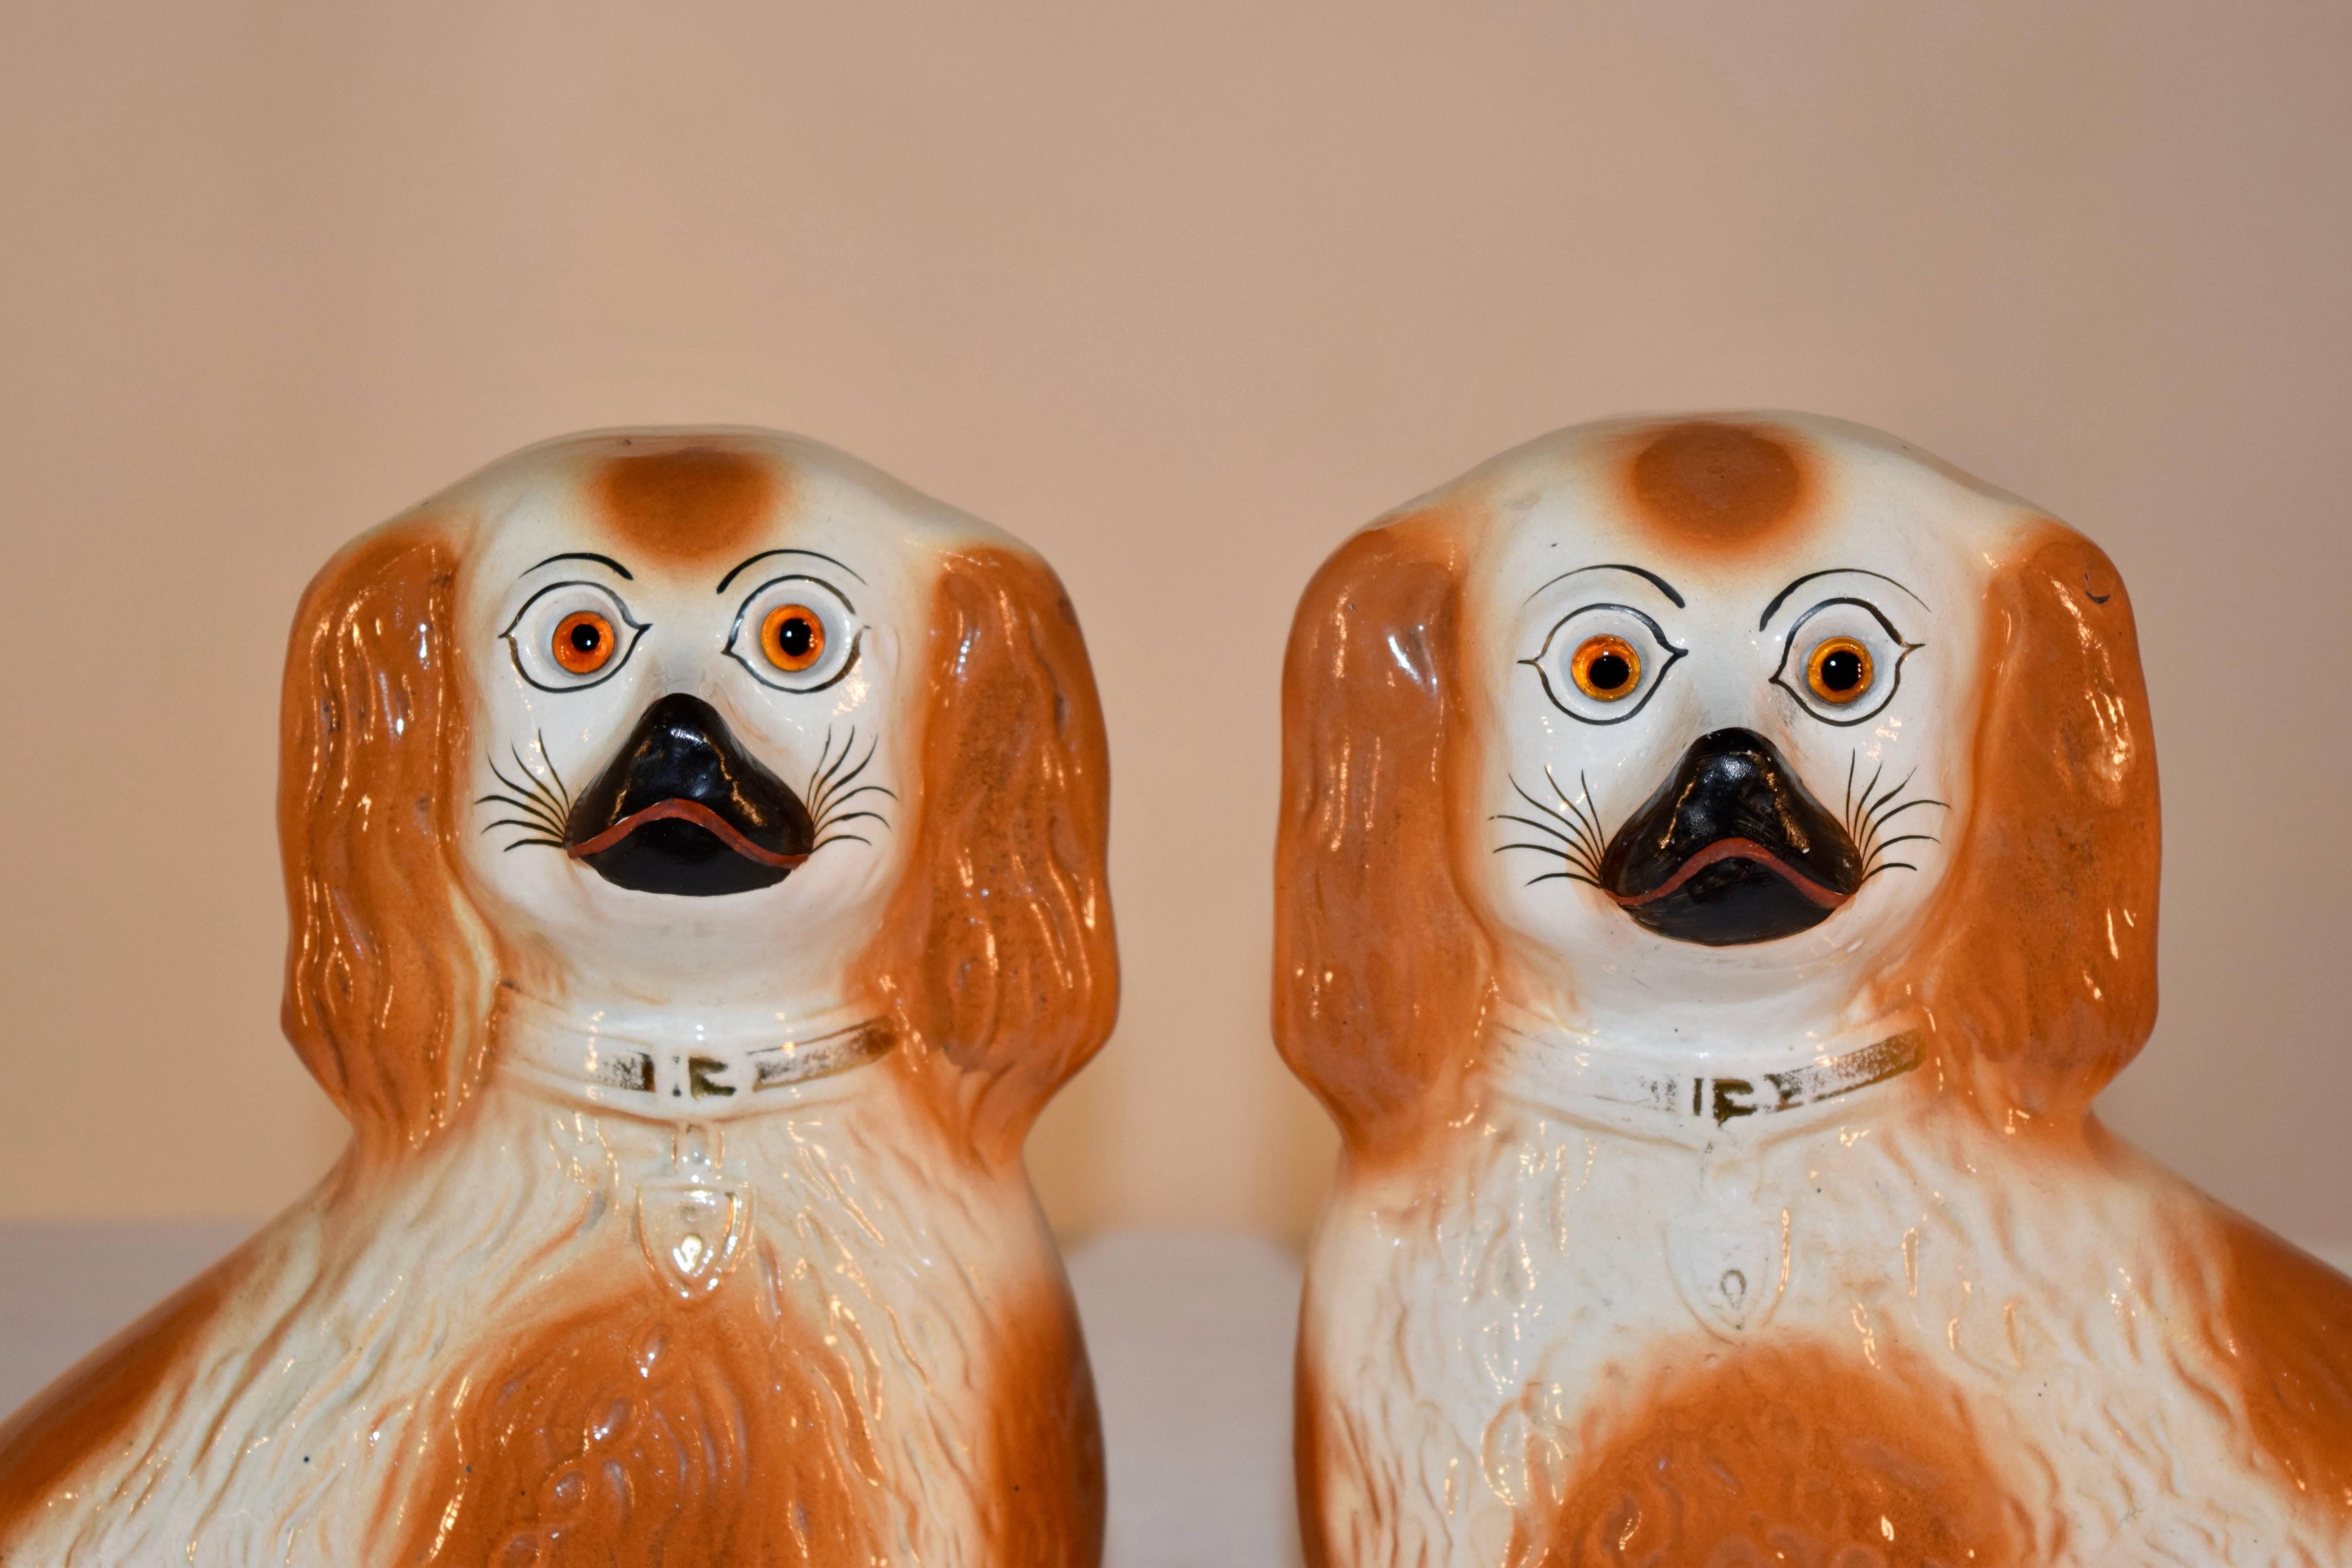 paire de jolis chiens en porcelaine du 19e siècle provenant de la région du Staffordshire en Angleterre. Ils ont des queues bouclées et des yeux de verre, et sont décorés d'une couleur rouille.